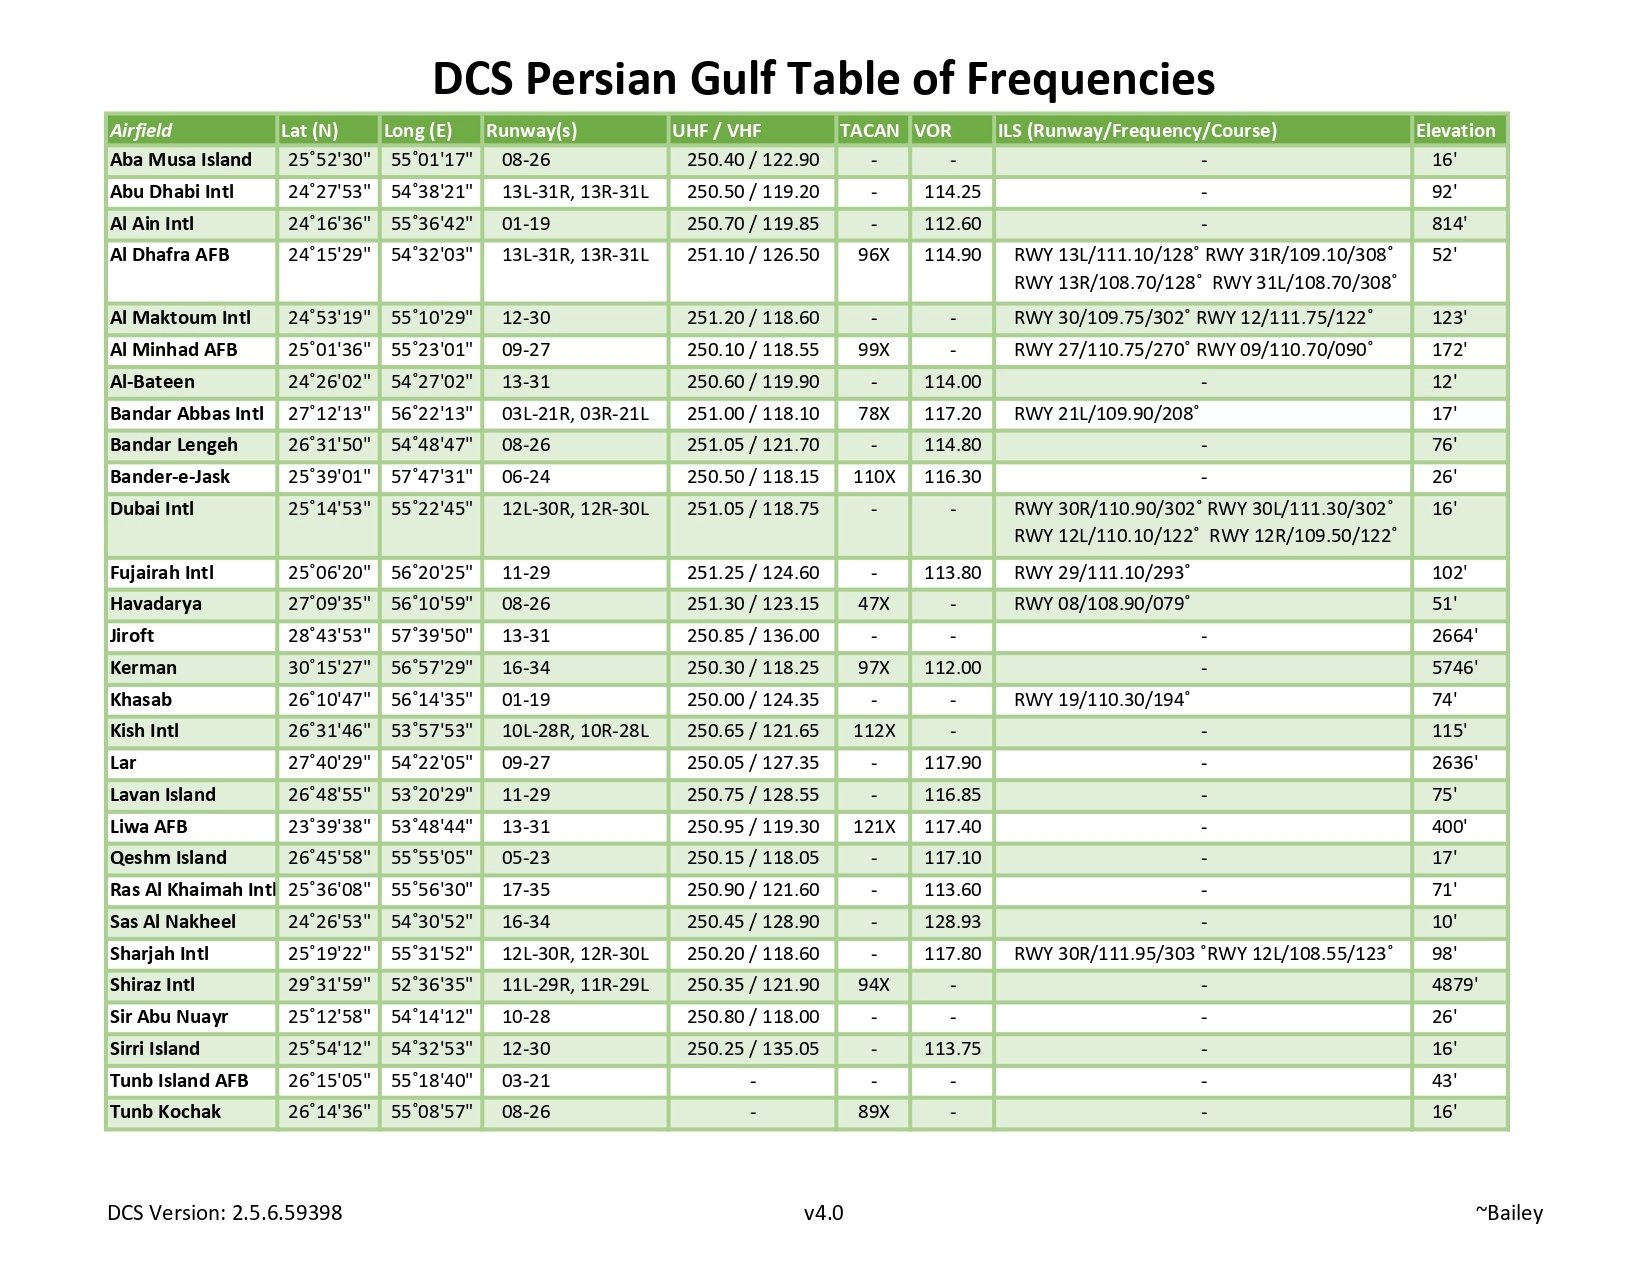 Coordonnées bases et frequence Golf Persique. Dcs_ta10